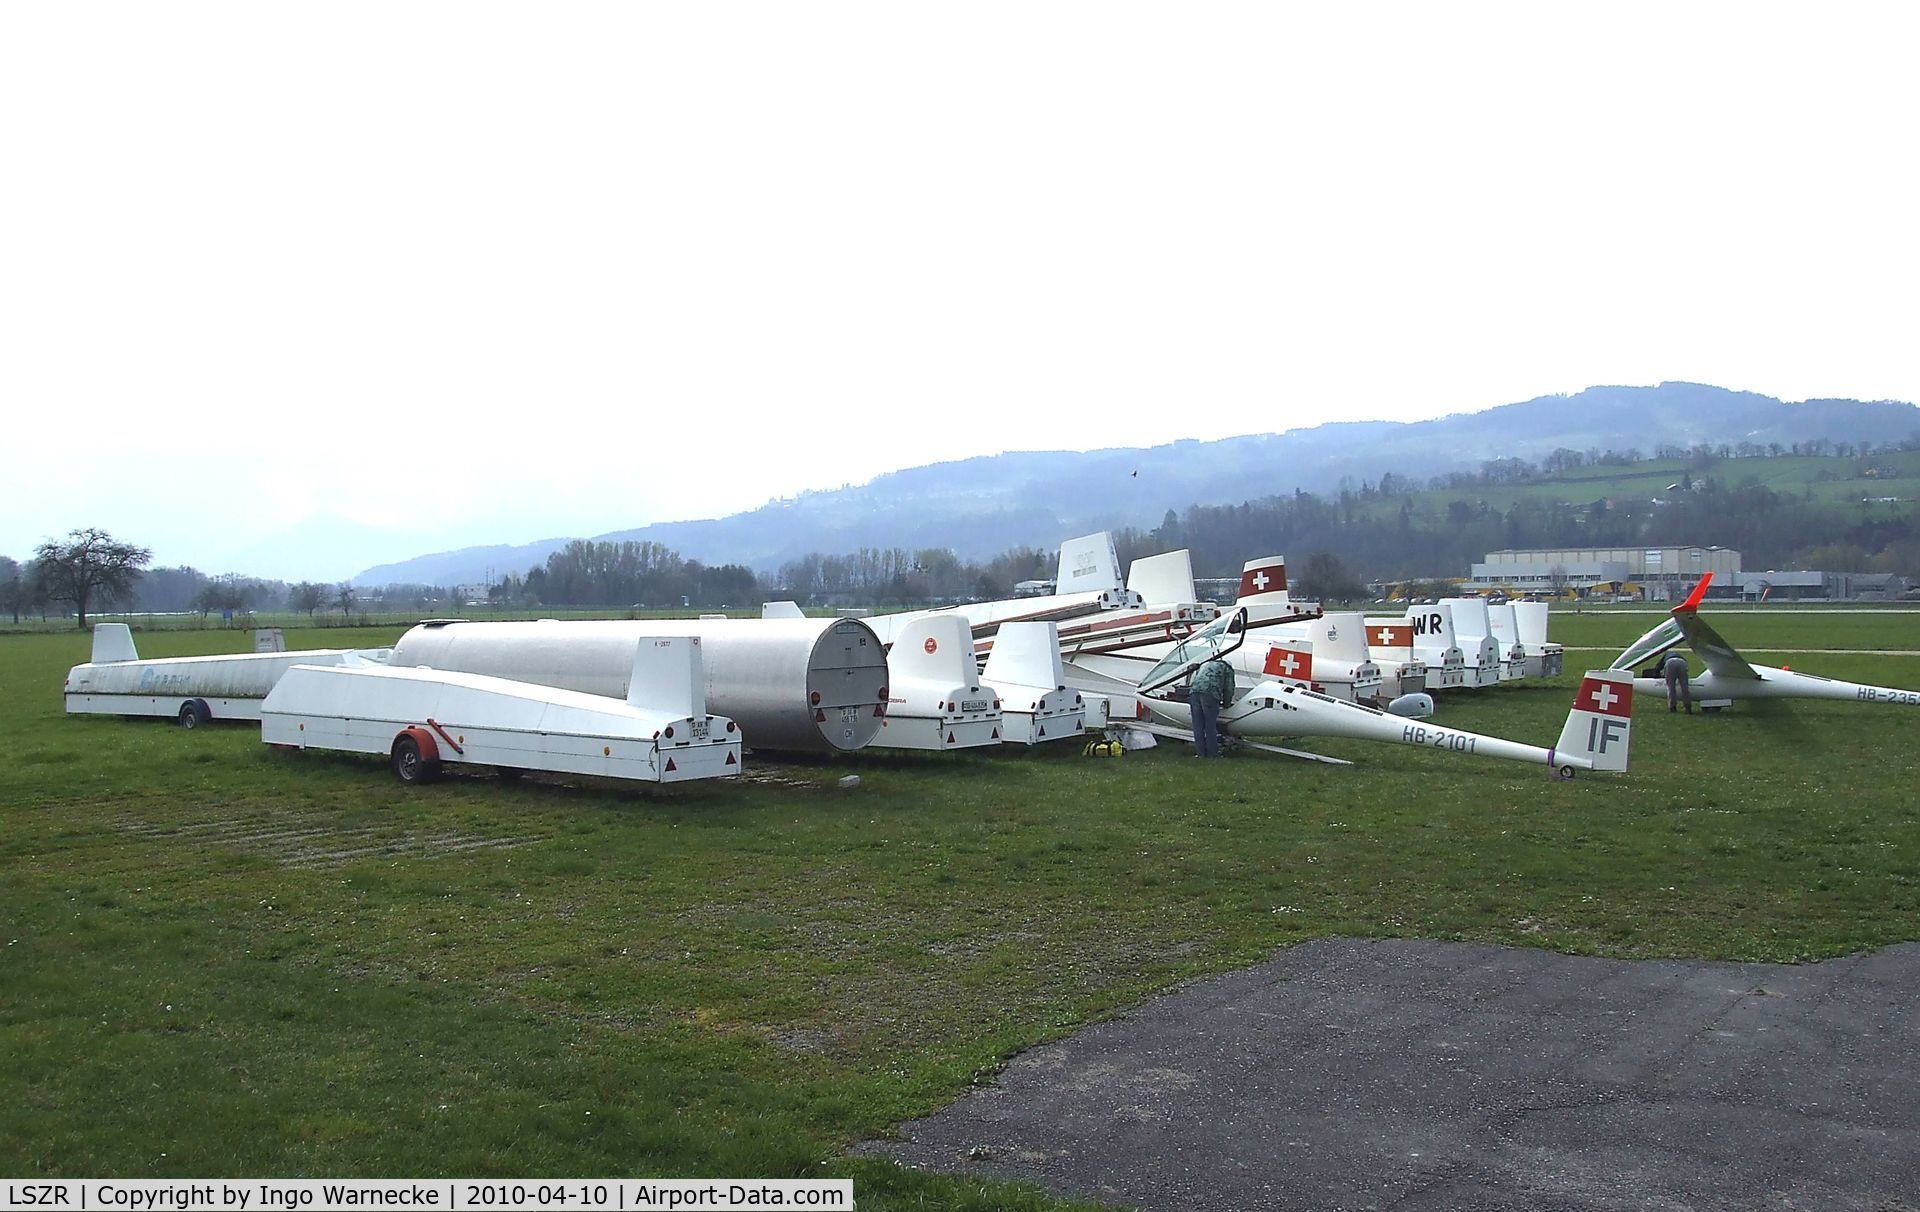 St. Gallen-Altenrhein Airport, Altenrhein Switzerland (LSZR) - Sailplanes outside at St. Gallen-Altenrhein airfield, seen from the back side